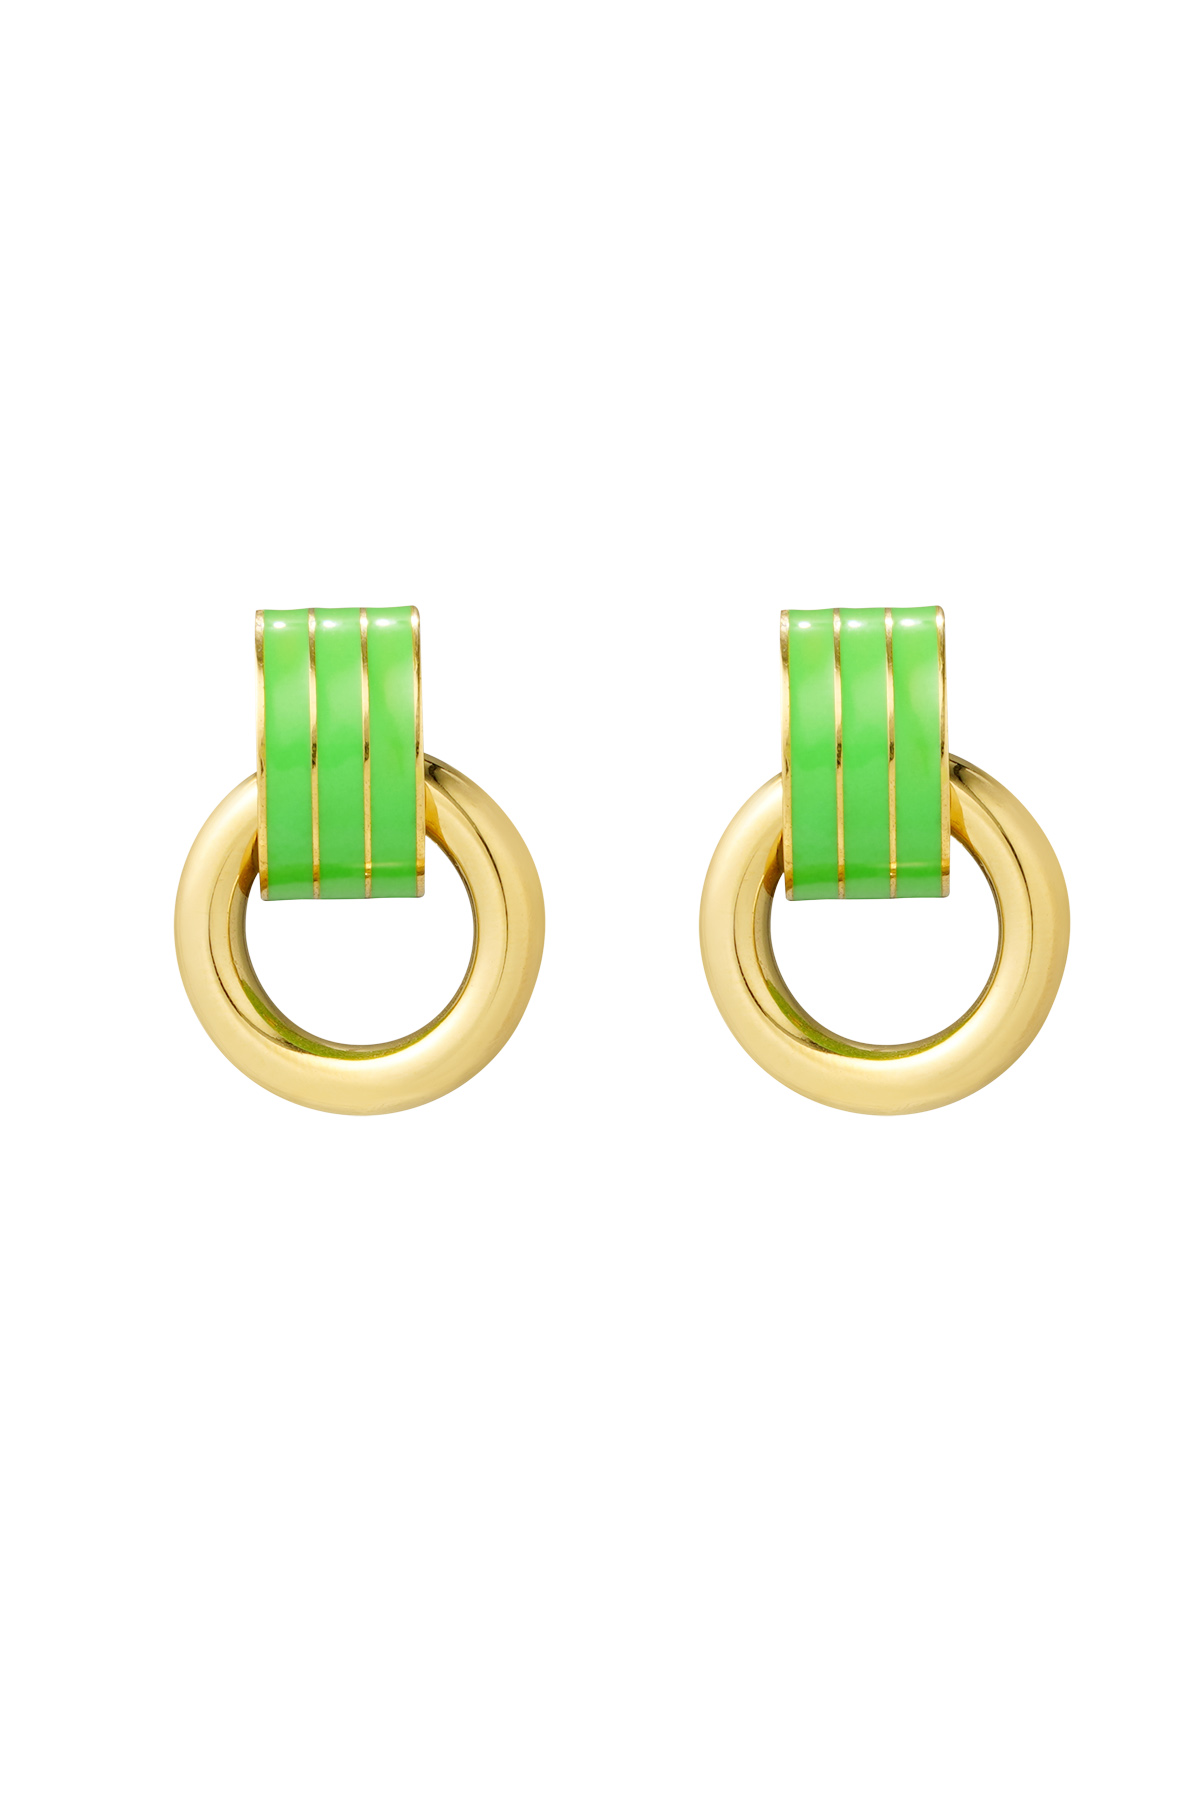 Ohrring doppelschichtig grün - gold 